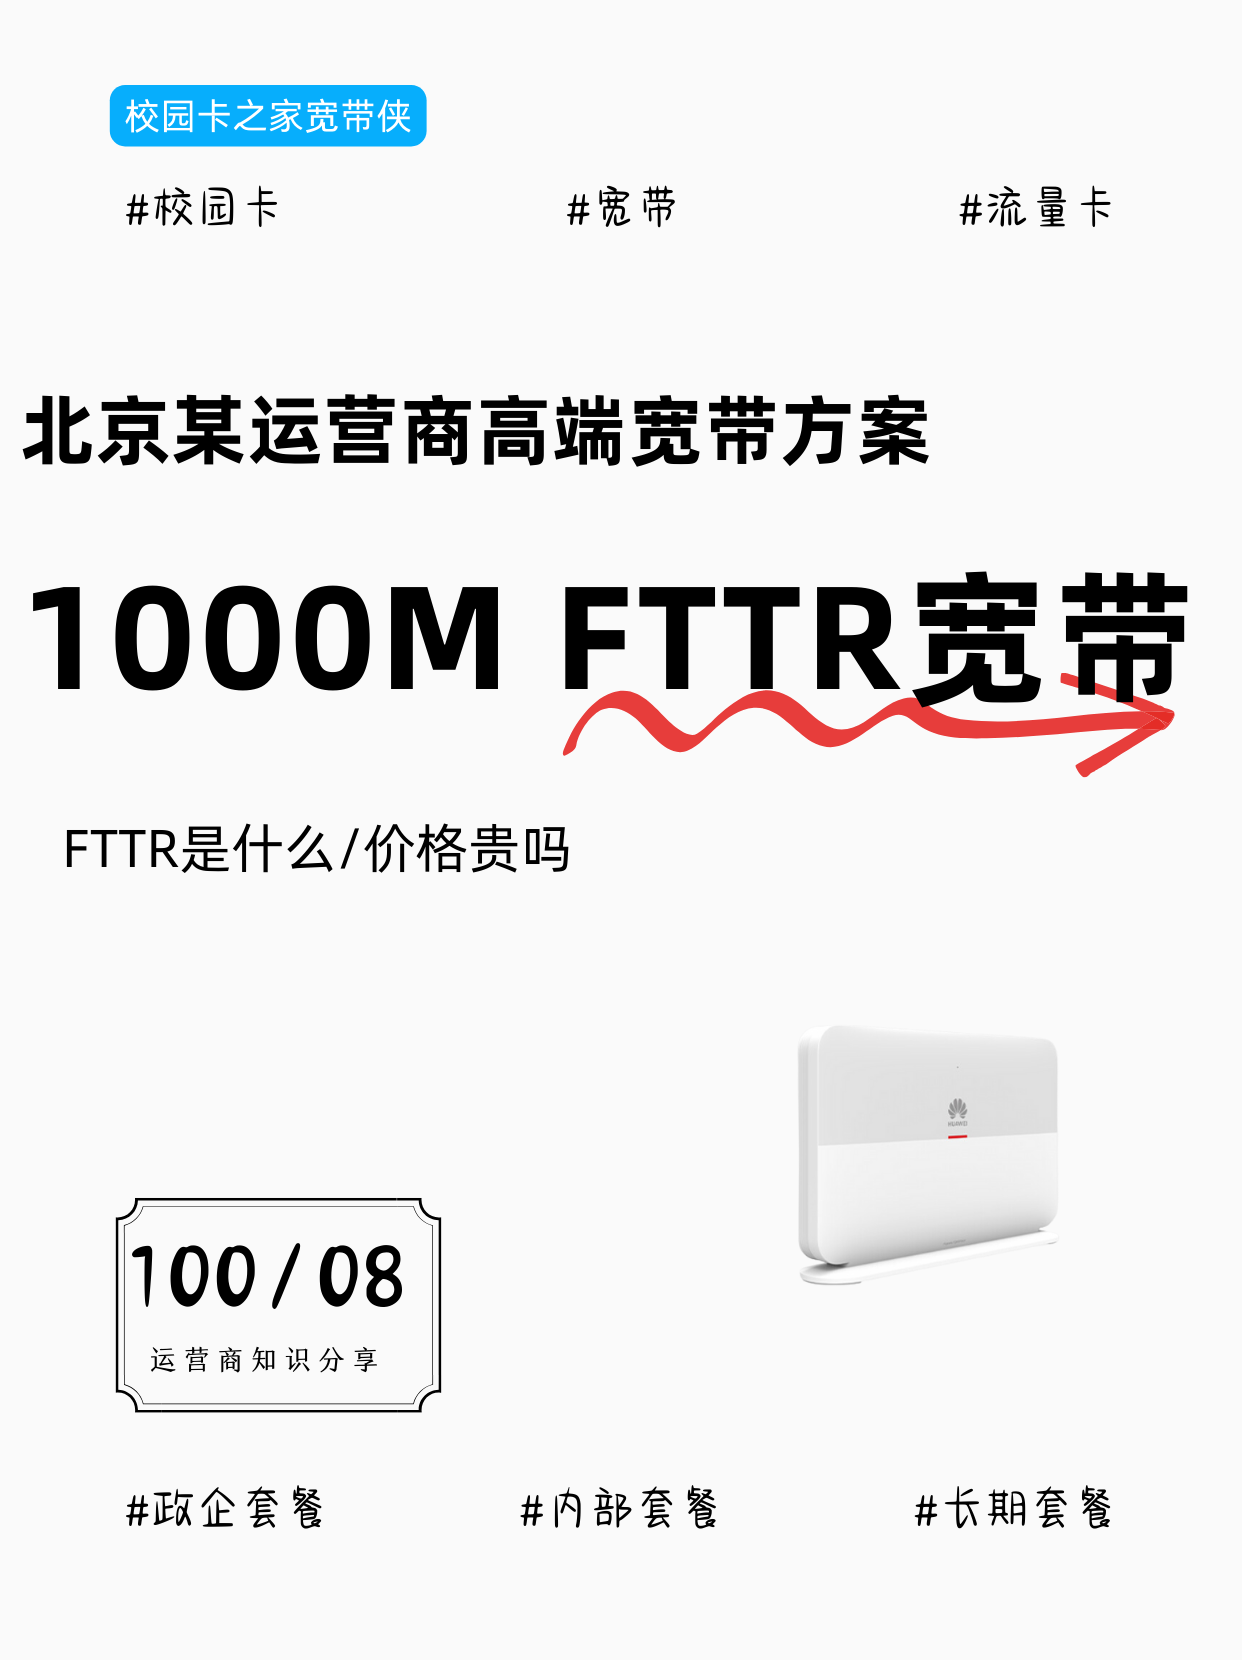 北京移动114元月租高端千兆FTTR宽带方案值得办理吗？插图